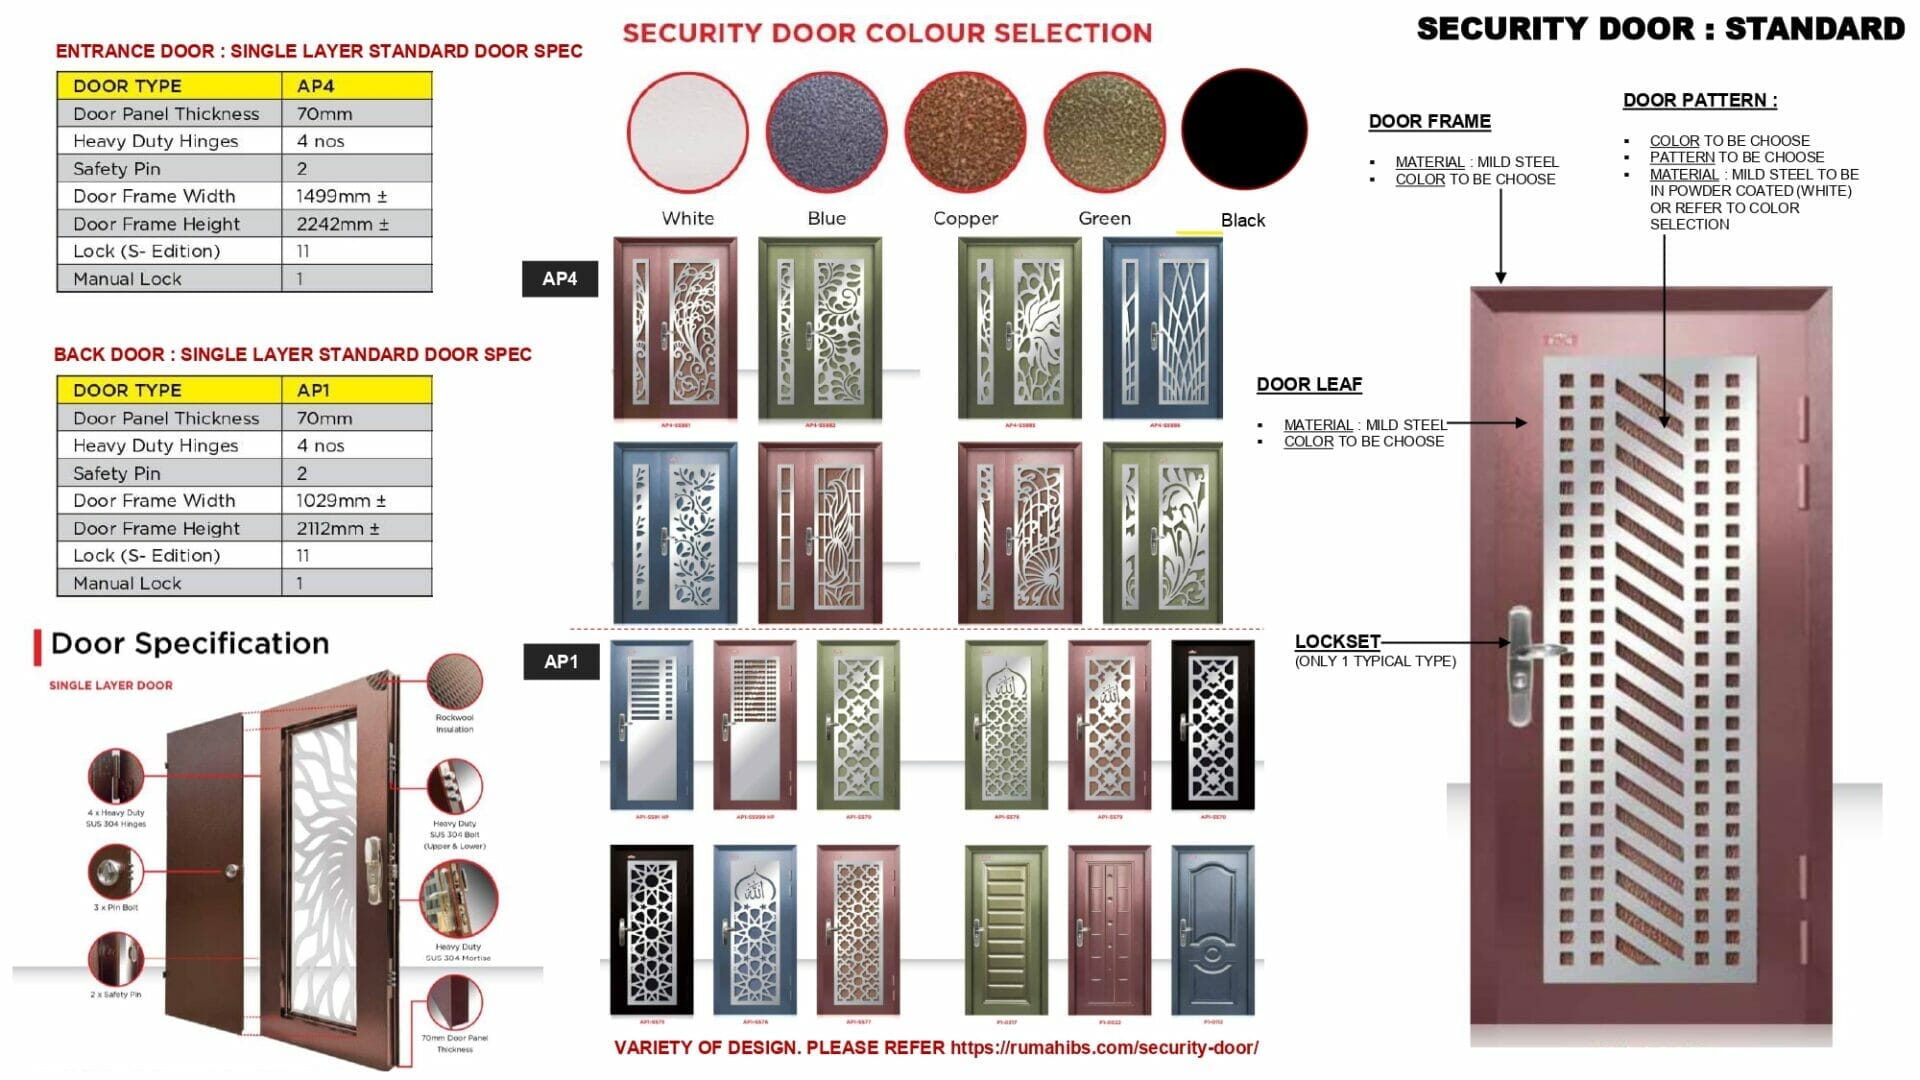 1 Security Door Standard page 0001